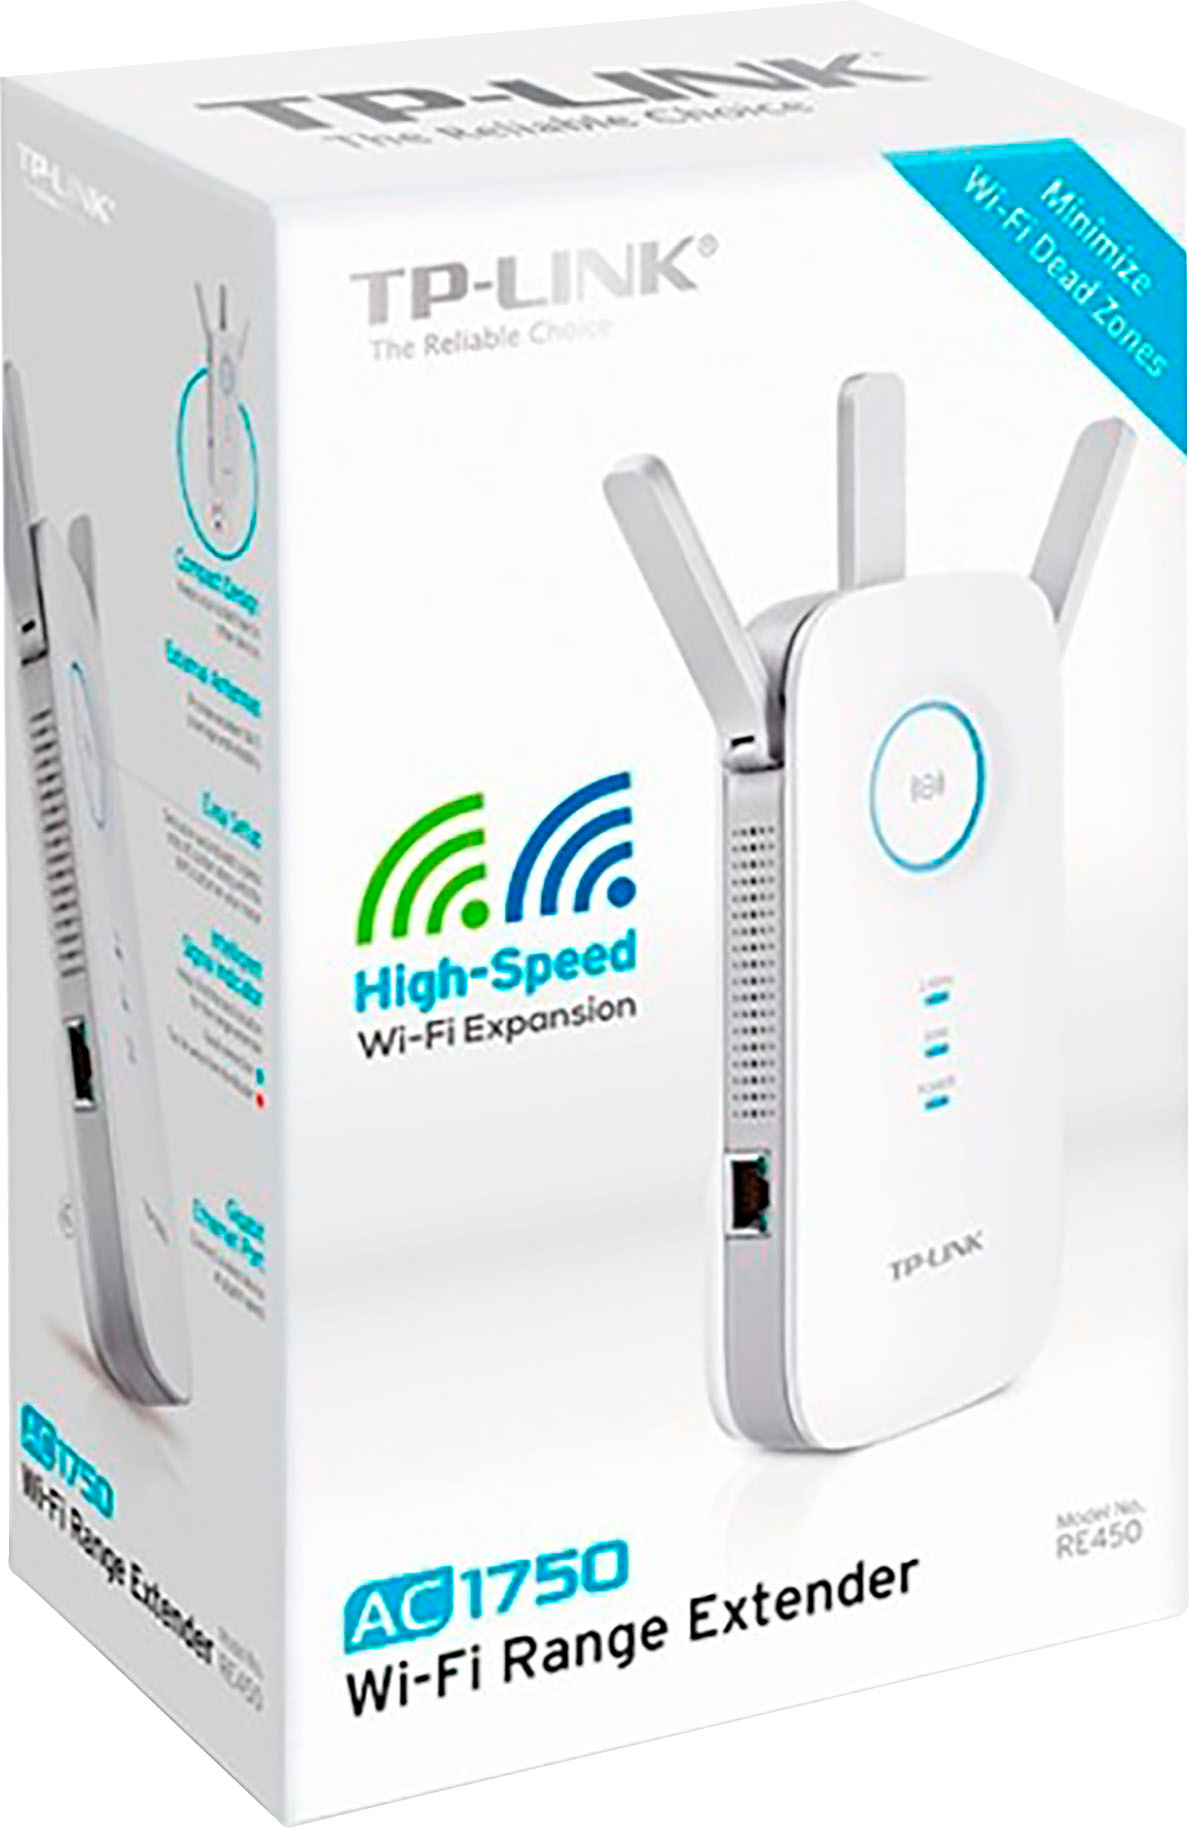 AC1750 Gigabit Wi-Fi Range Extender White - Best Buy